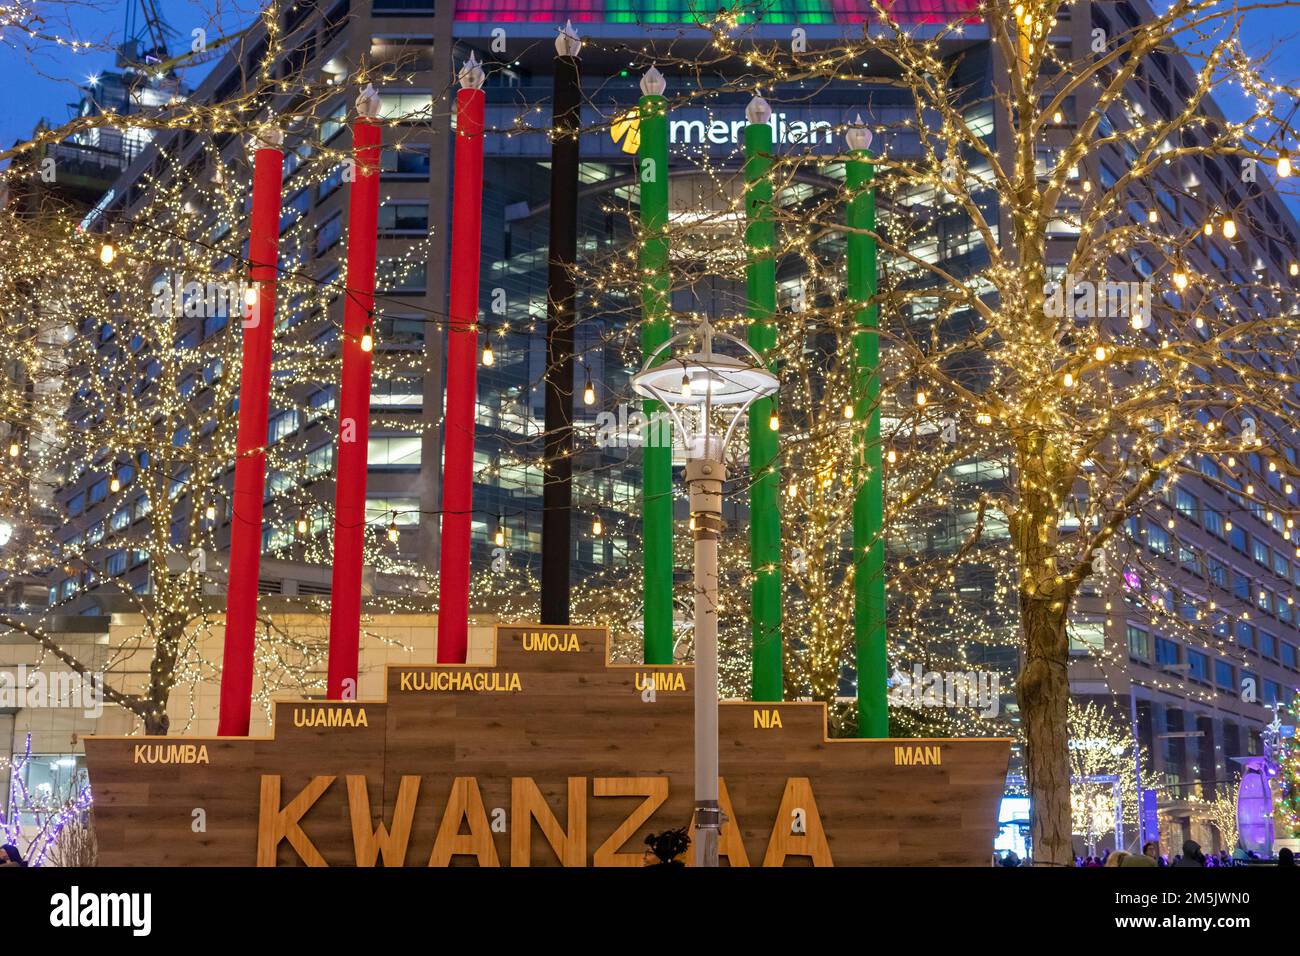 Detroit, Michigan - A Kwanzaa kinara nel Campus Martius Park durante le celebrazioni delle vacanze invernali. Le sette candele nella kinara (Swahili per 'candela h Foto Stock